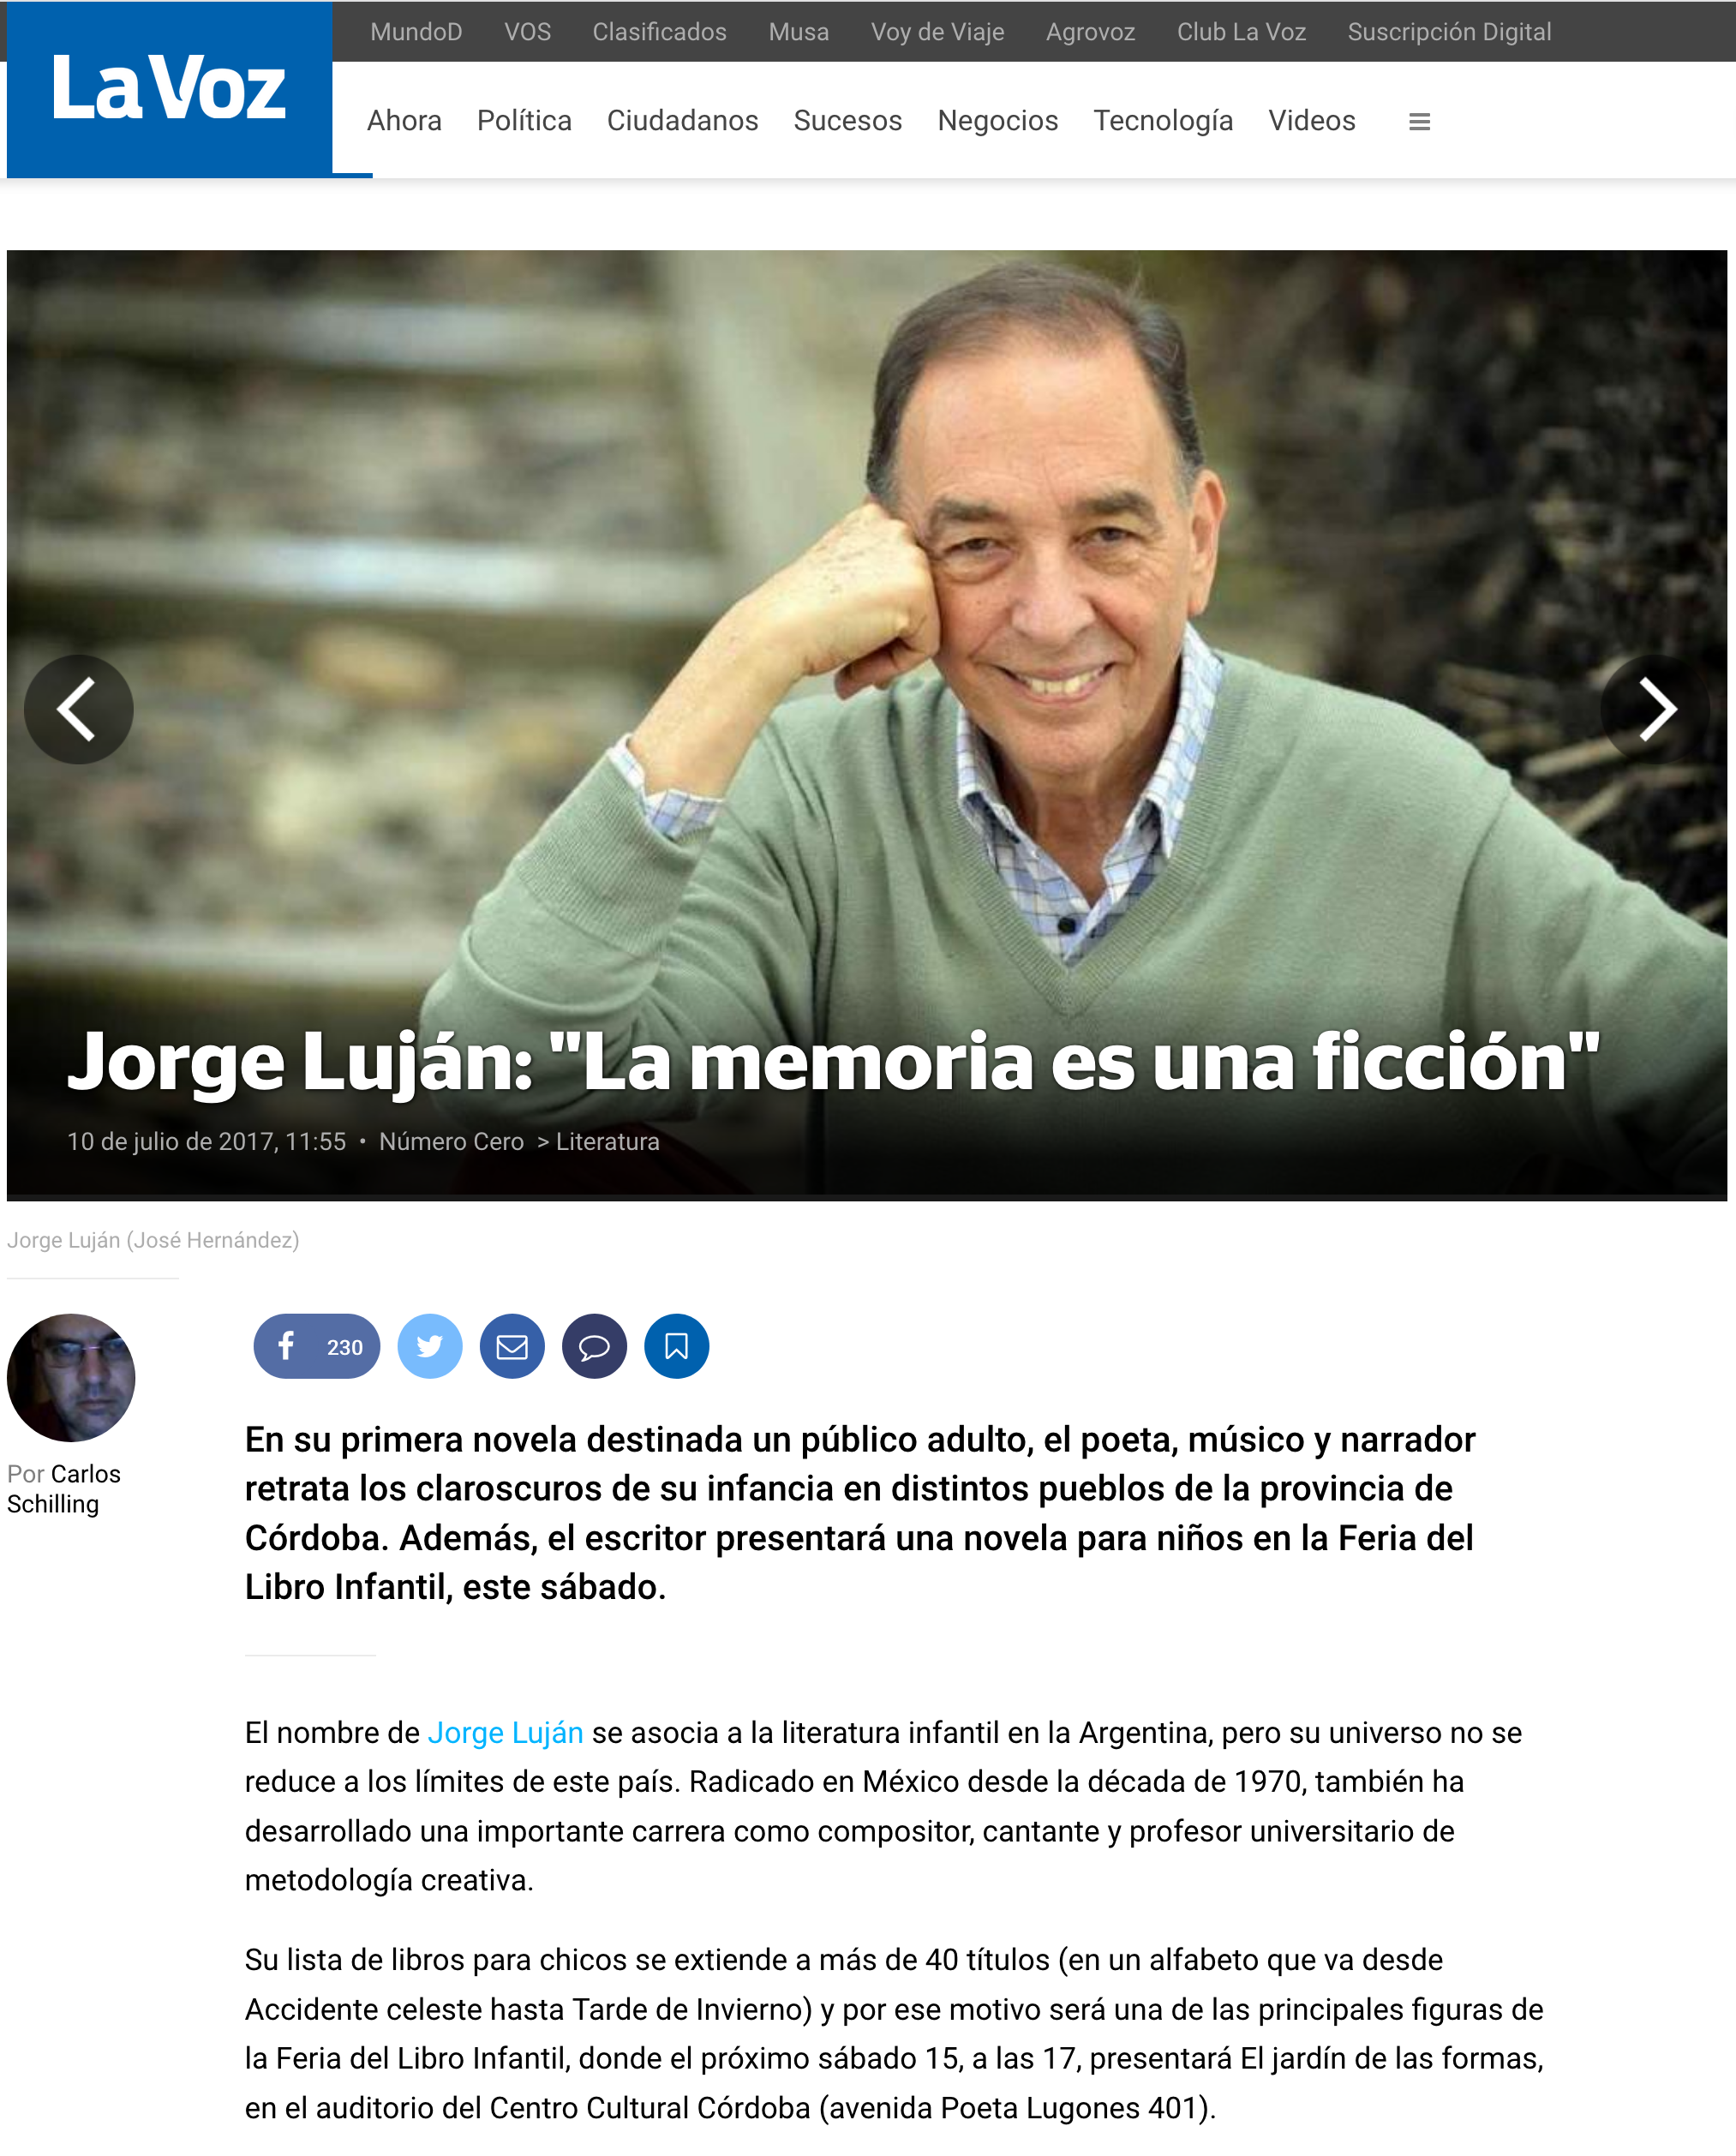 Jjorge Luján nota en lavoz.com.ar